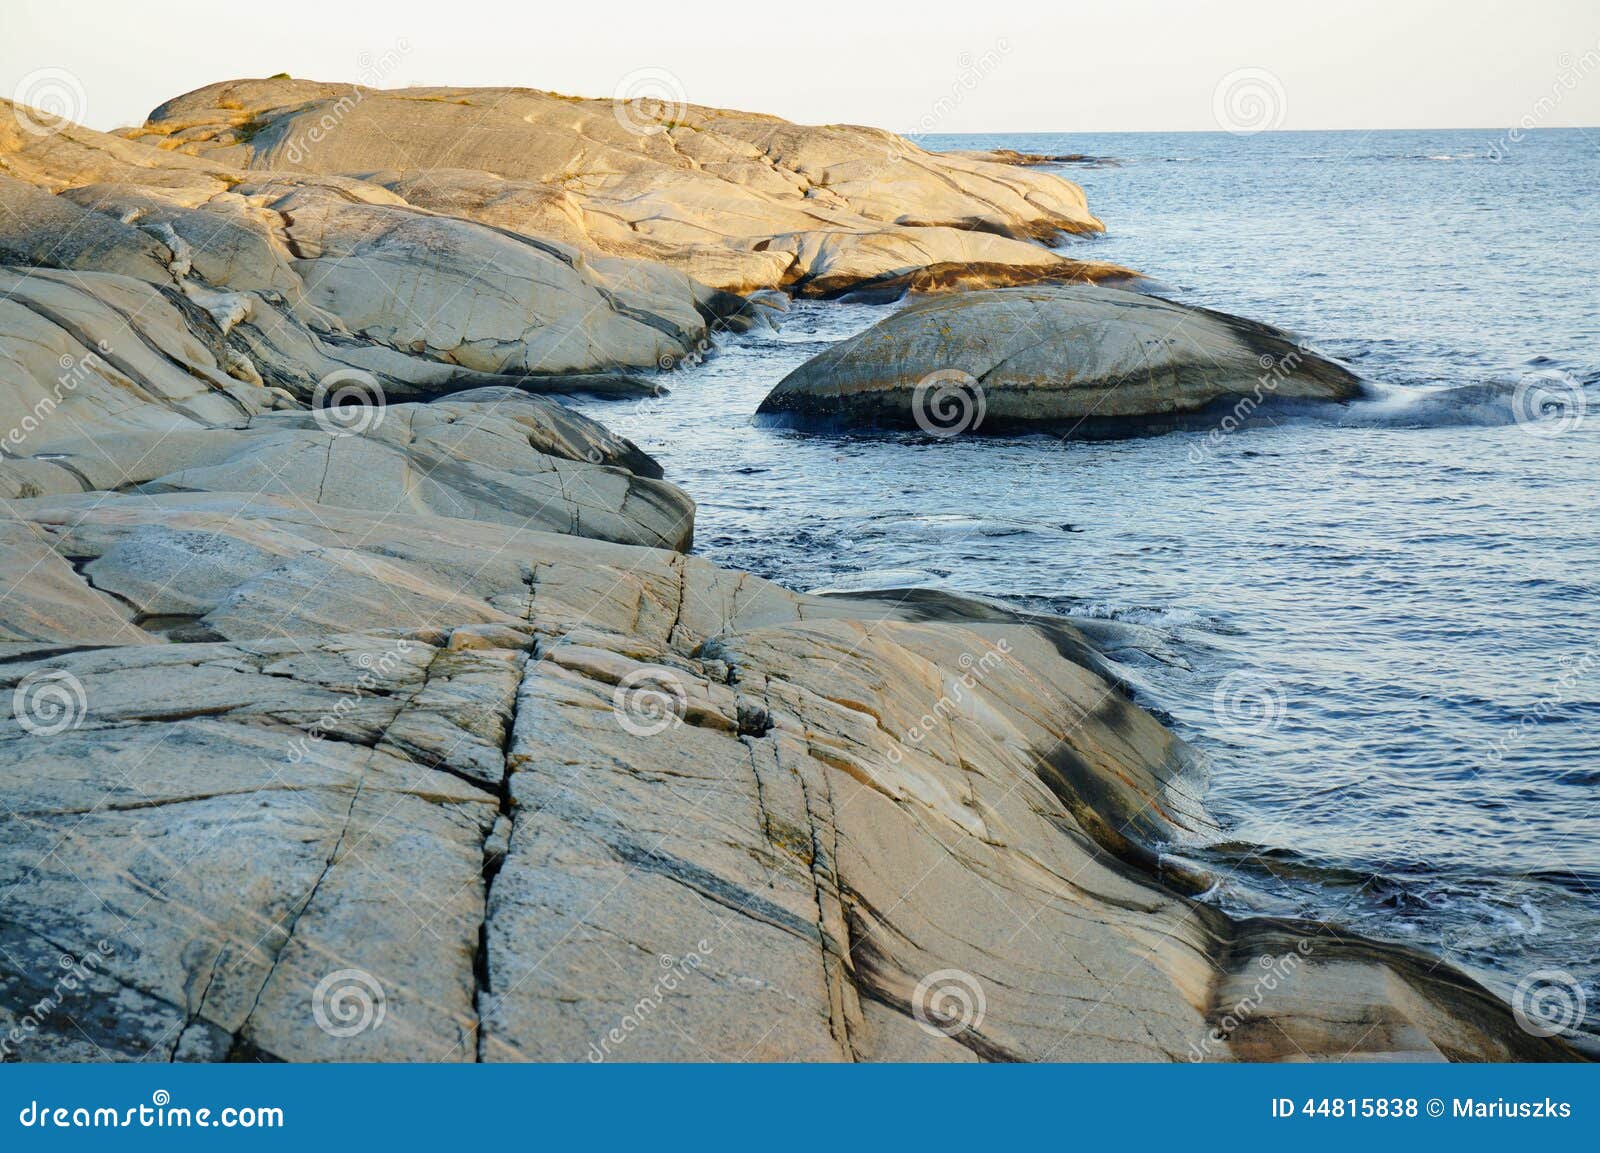 stangnes bedrock and noth sea, norway